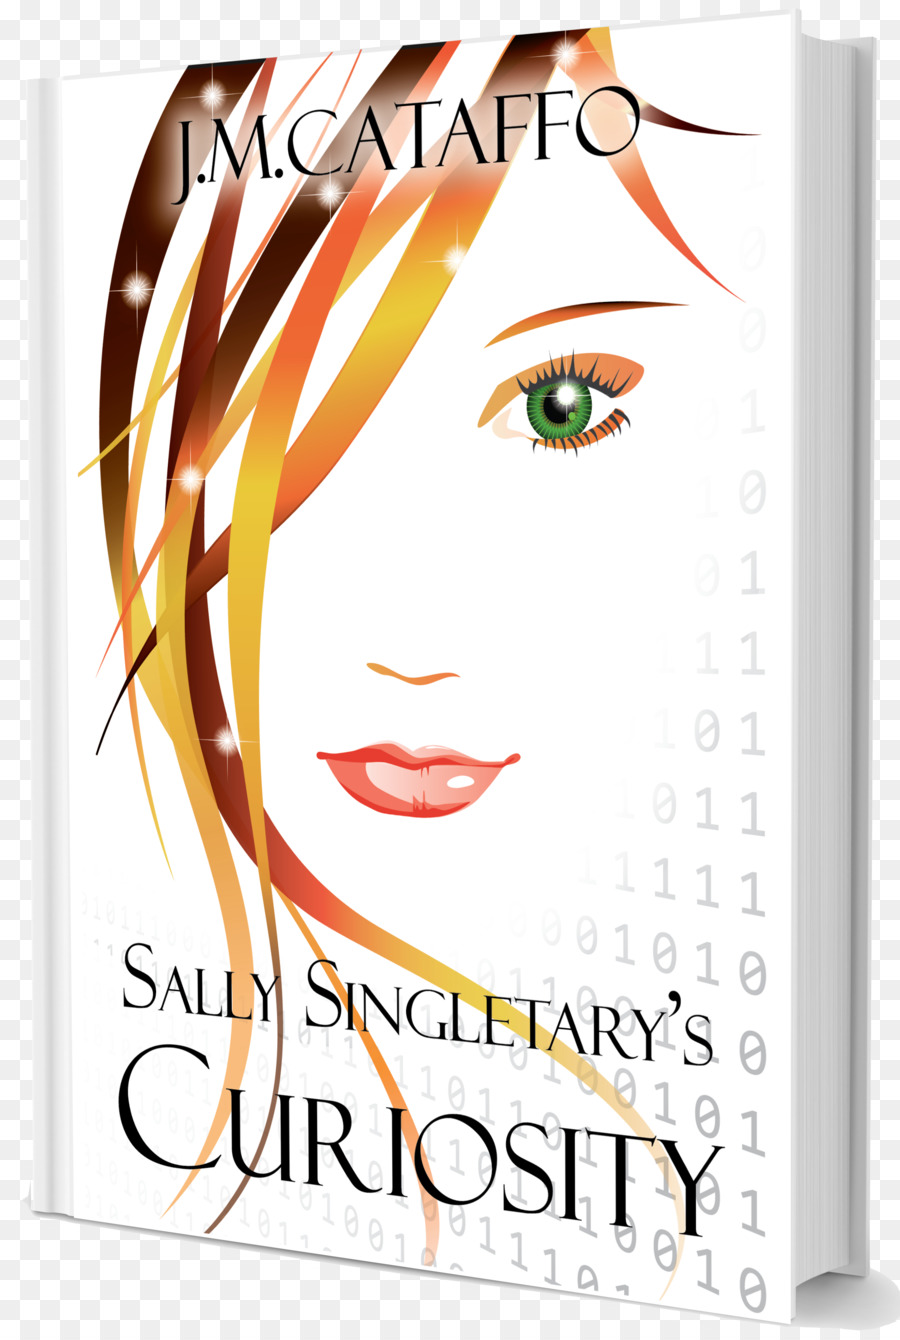 Sally Singletary El Descubrimiento De Un Elementos De La Eaa De La Serie，Sally Singletary La Curiosidad PNG